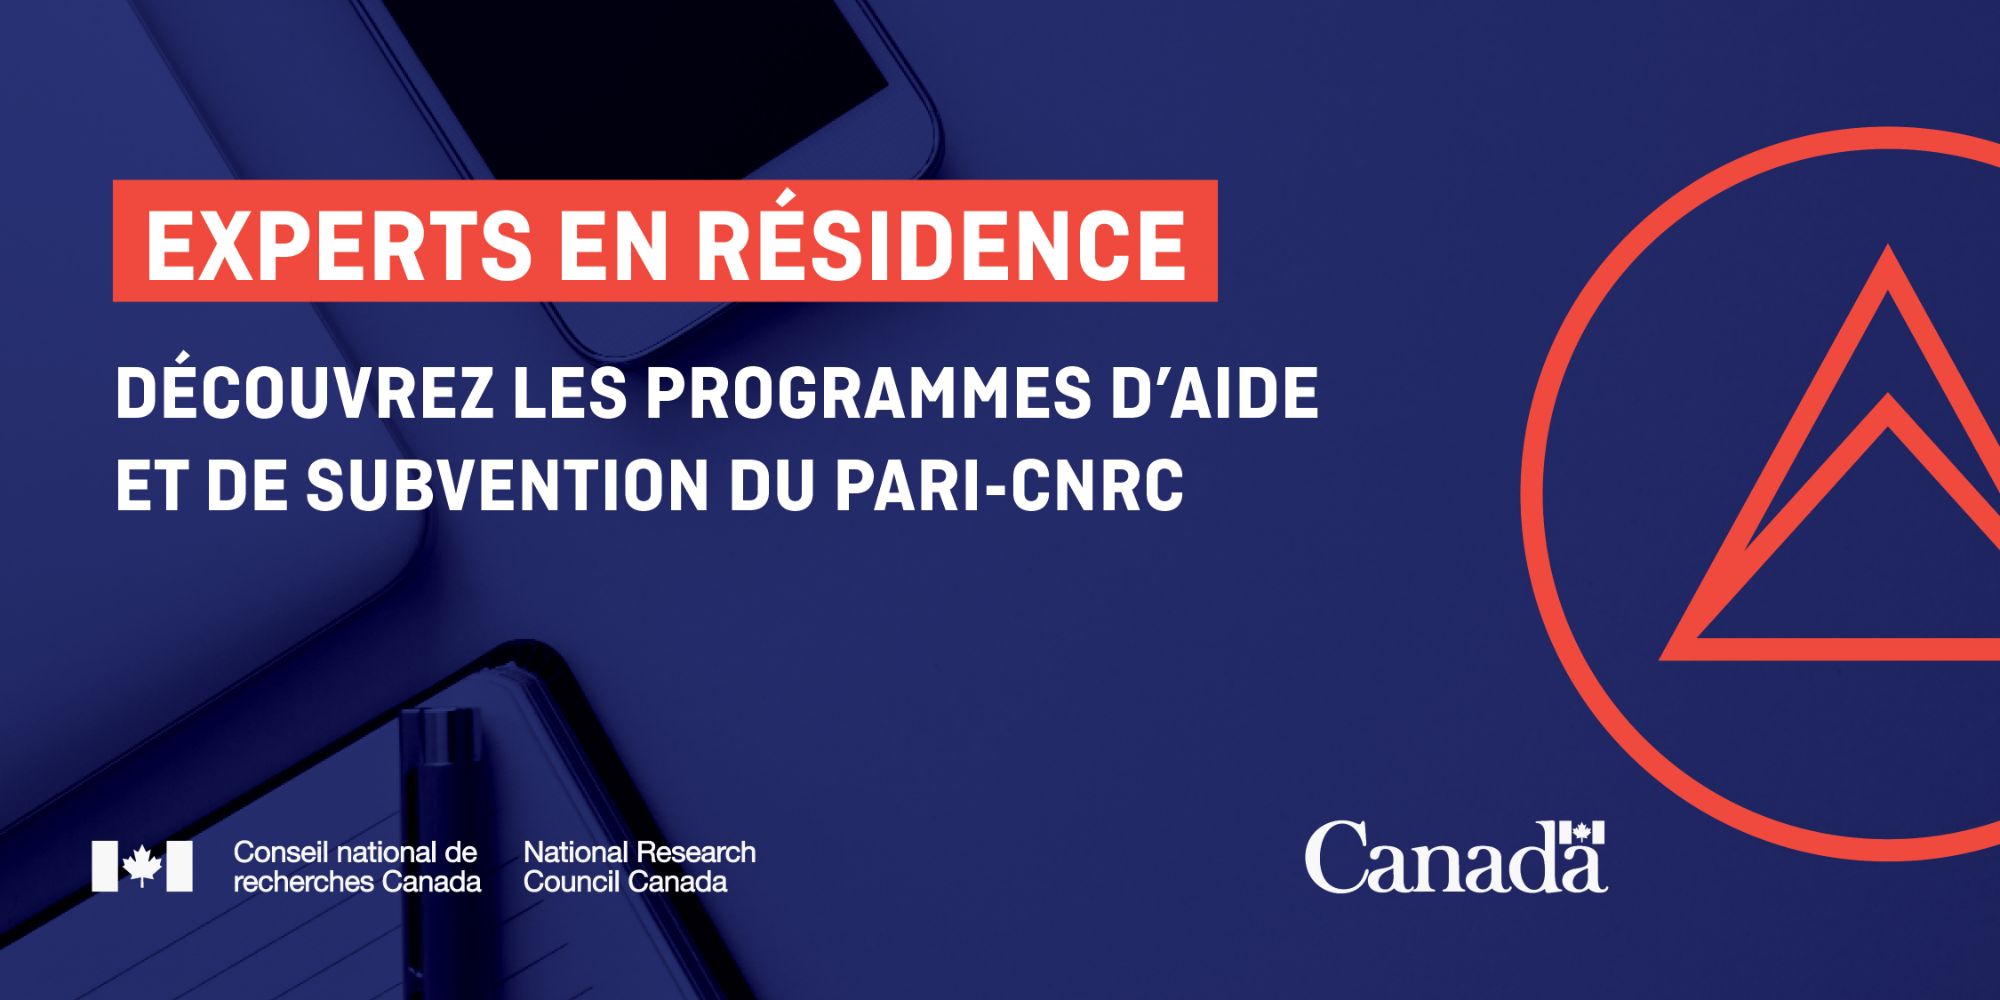 Connaître et comprendre les programmes d’aide et subventions du PARI-CNRC